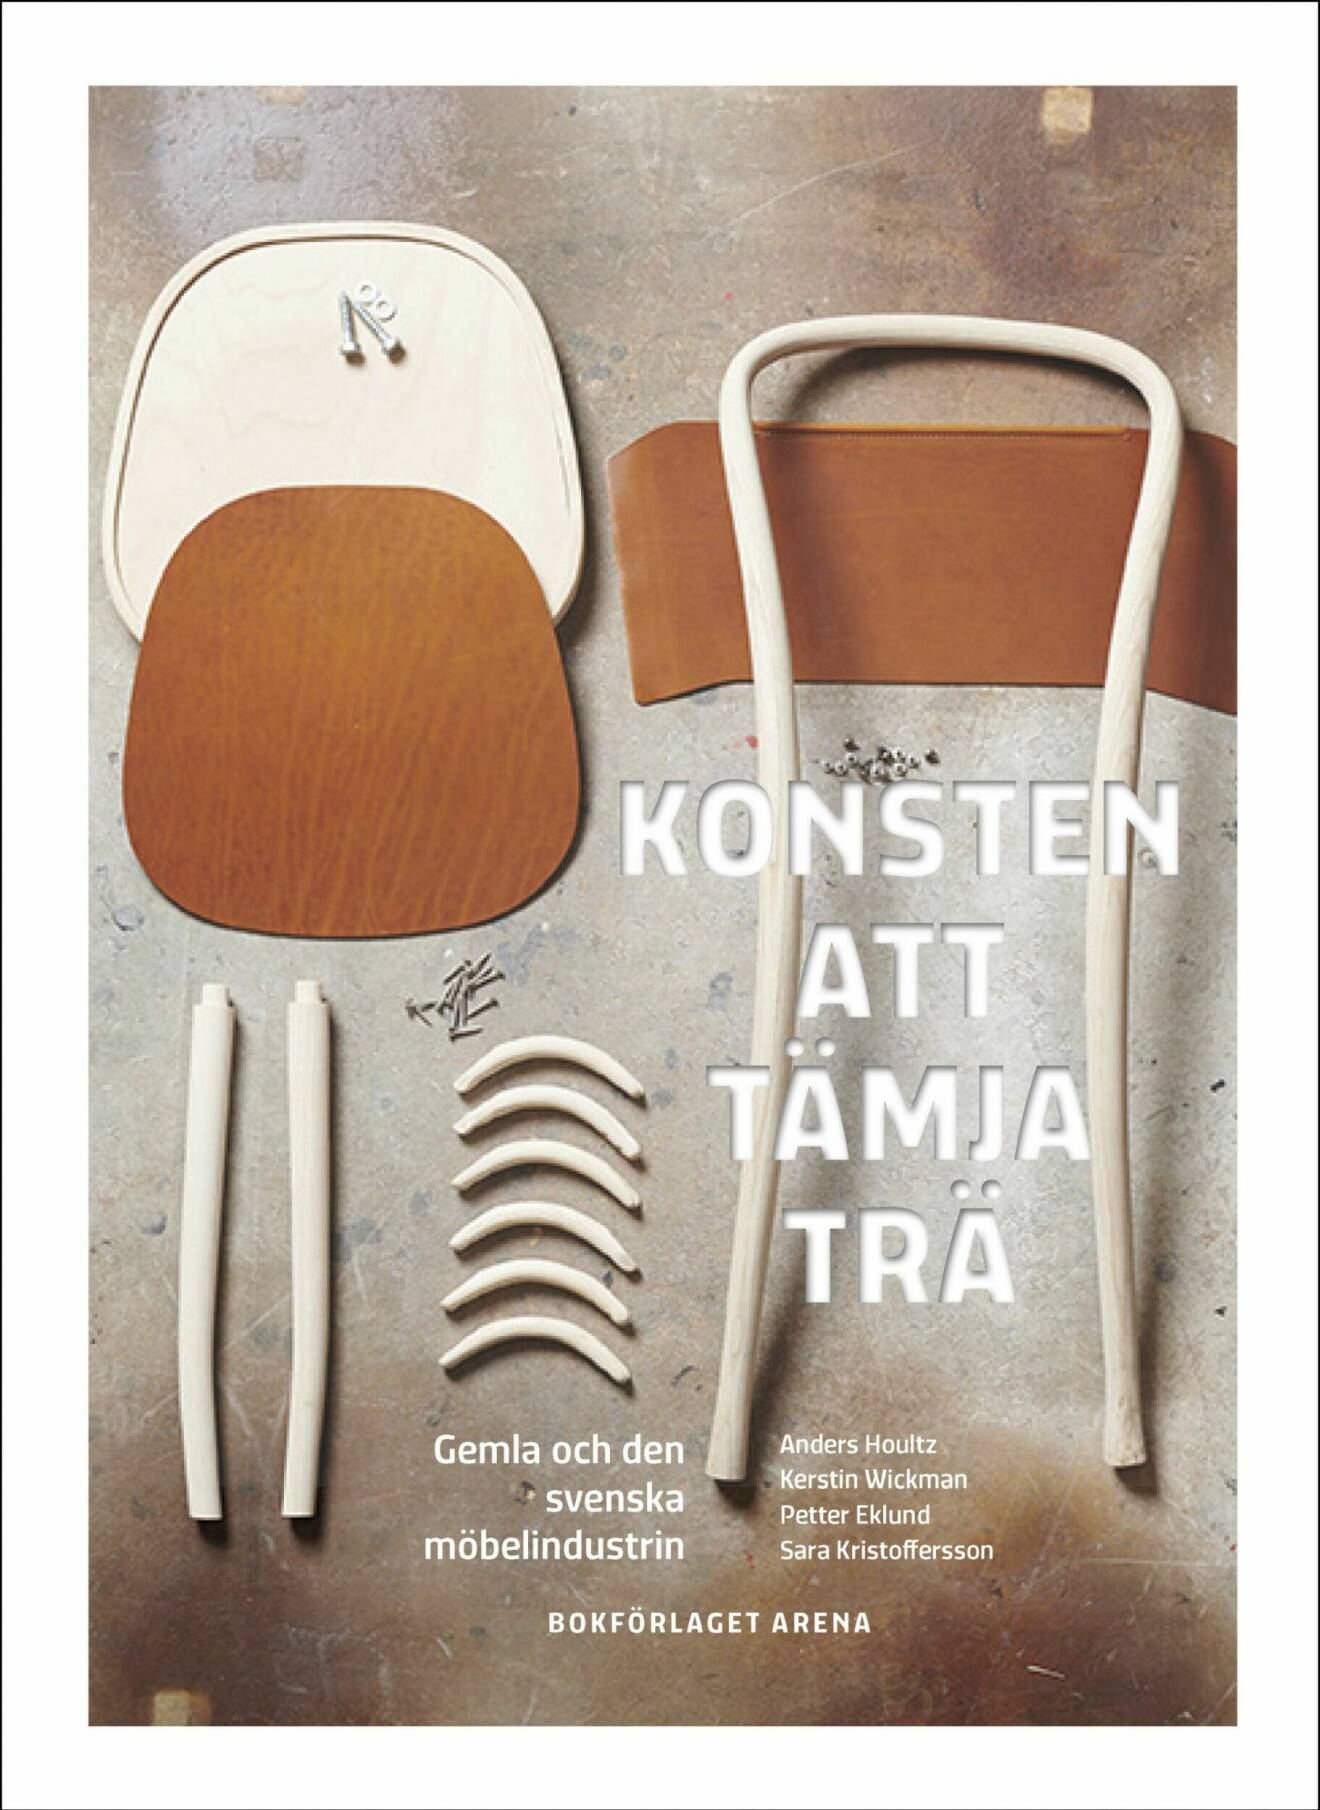 Konsten att tämja trä: Gemla och den svenska möbelindustrin av Sara Kristoffersson, Petter Eklund, Anders Houltz, Kerstin Wickman (Bokförlaget Arena).